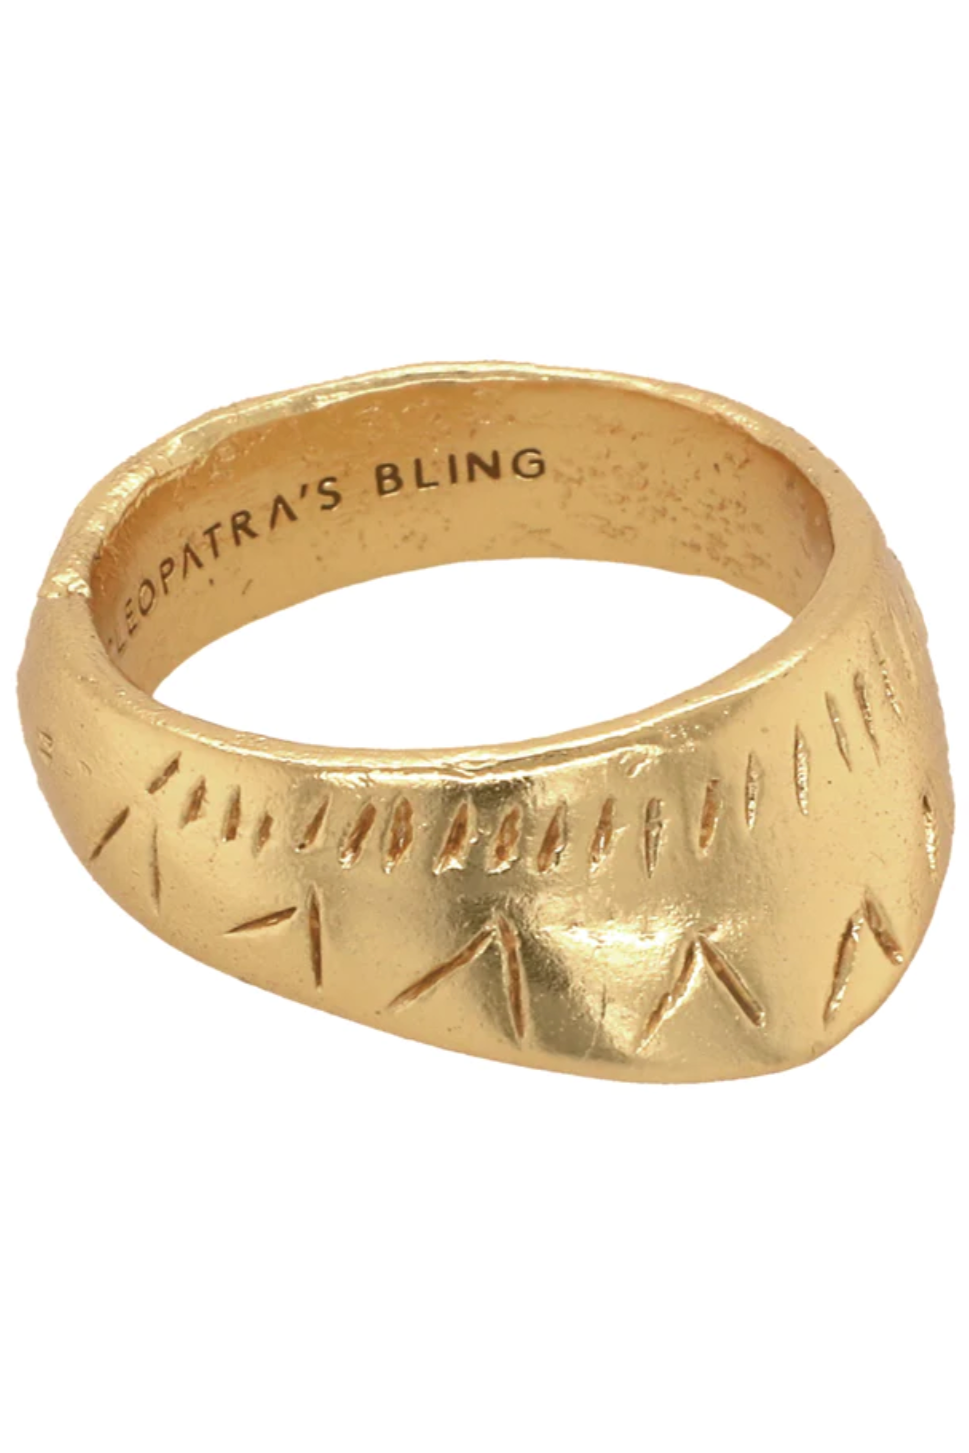 Puabi Ring - Gold